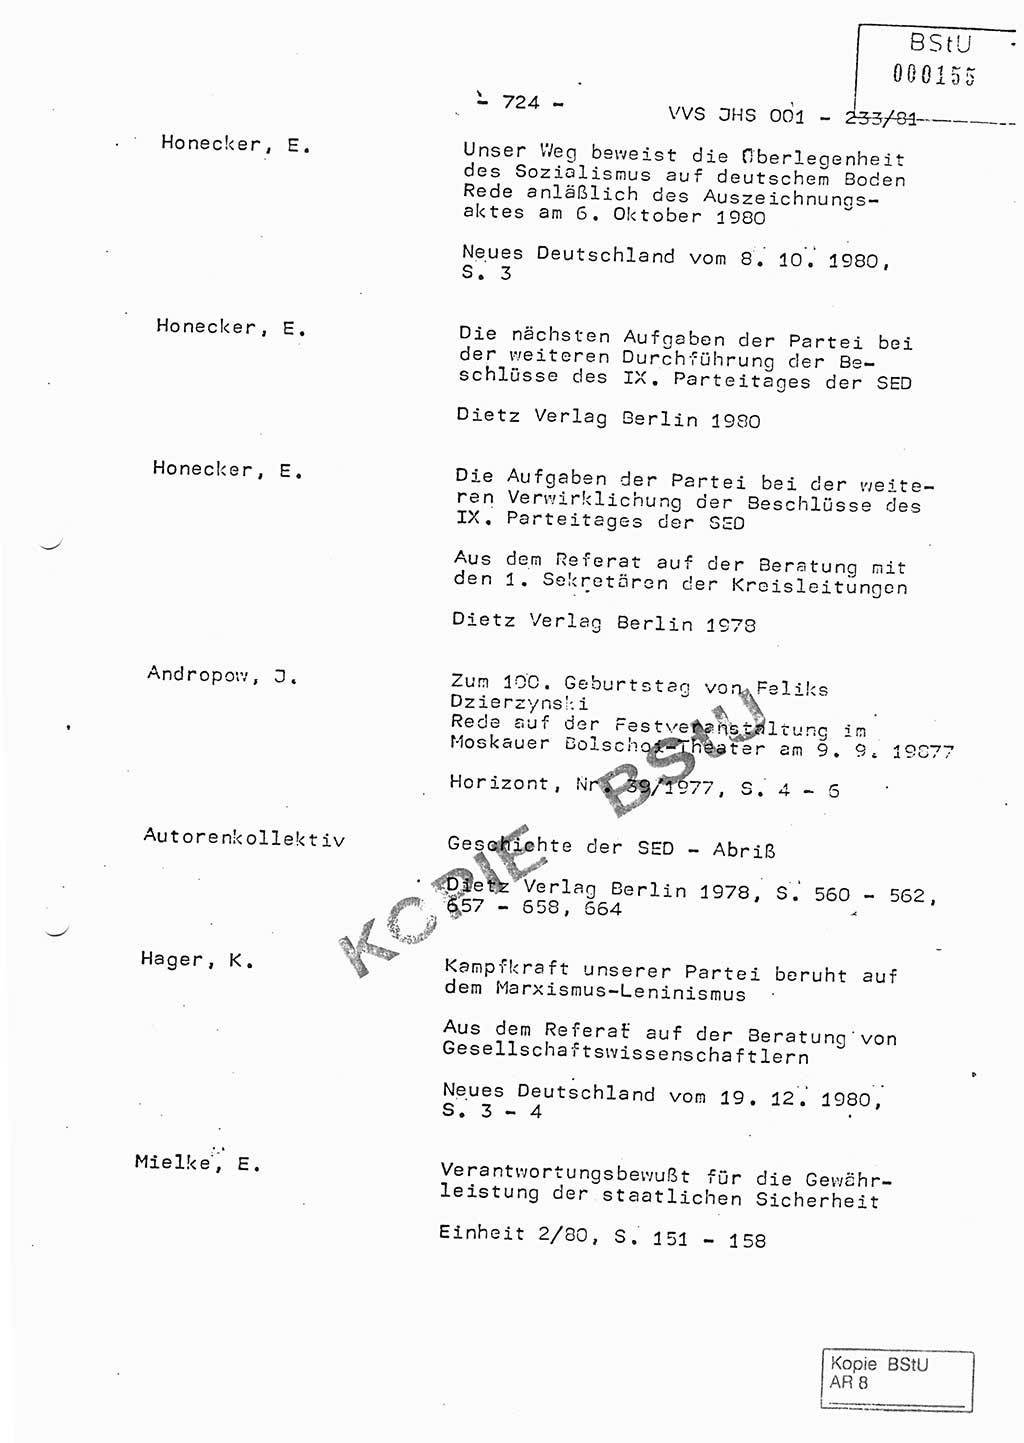 Dissertation Oberstleutnant Horst Zank (JHS), Oberstleutnant Dr. Karl-Heinz Knoblauch (JHS), Oberstleutnant Gustav-Adolf Kowalewski (HA Ⅸ), Oberstleutnant Wolfgang Plötner (HA Ⅸ), Ministerium für Staatssicherheit (MfS) [Deutsche Demokratische Republik (DDR)], Juristische Hochschule (JHS), Vertrauliche Verschlußsache (VVS) o001-233/81, Potsdam 1981, Blatt 724 (Diss. MfS DDR JHS VVS o001-233/81 1981, Bl. 724)